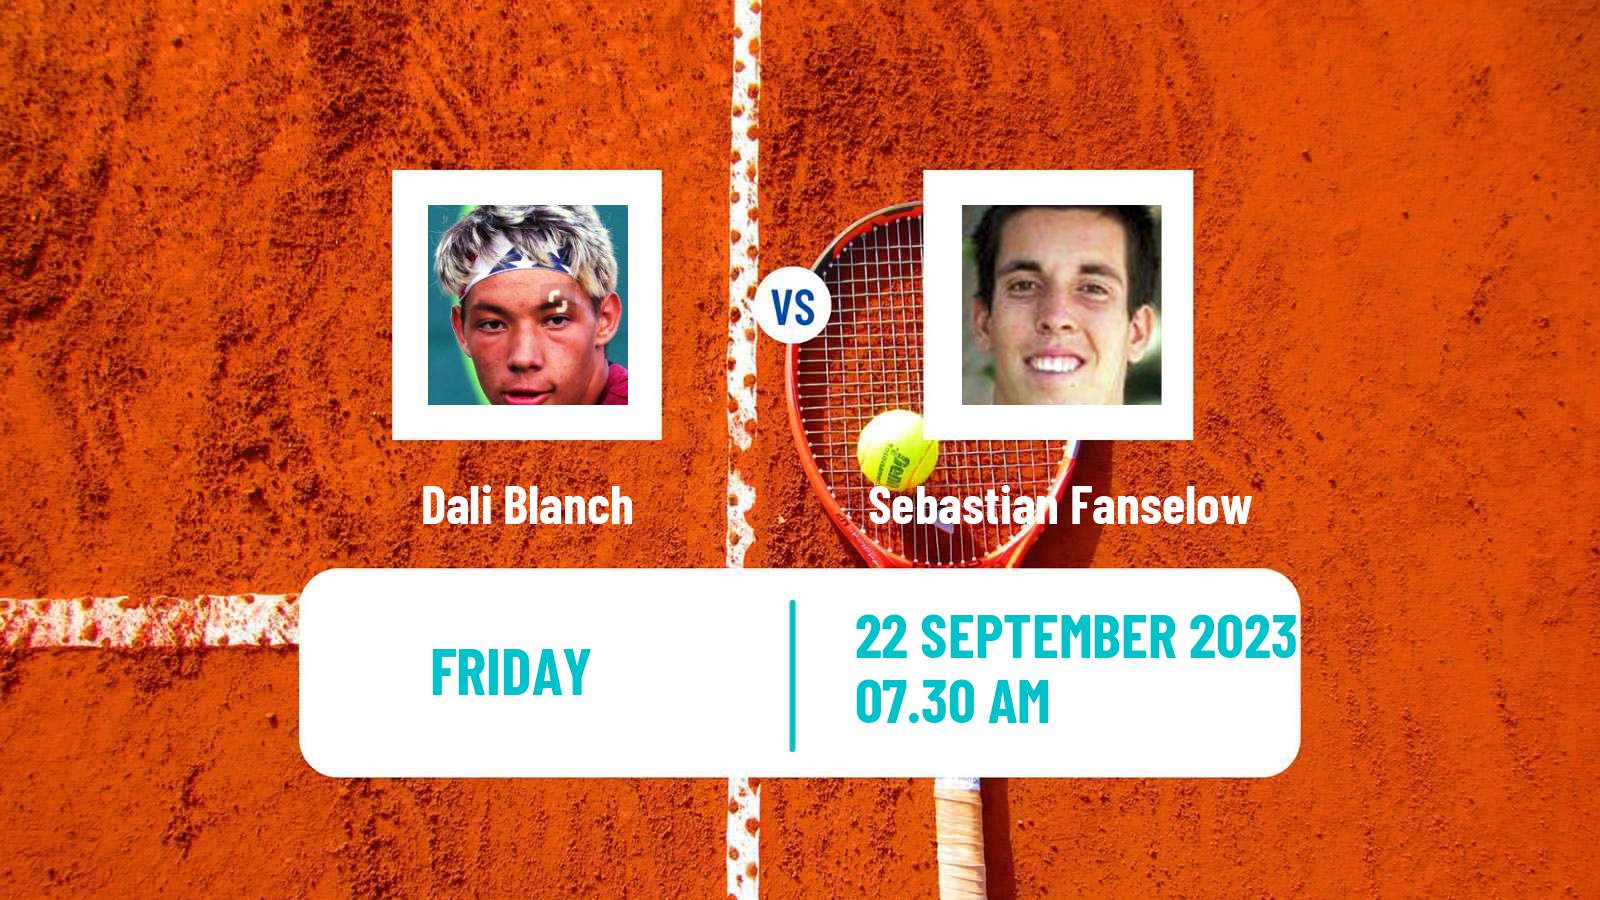 Tennis ITF M25 Setubal Men Dali Blanch - Sebastian Fanselow